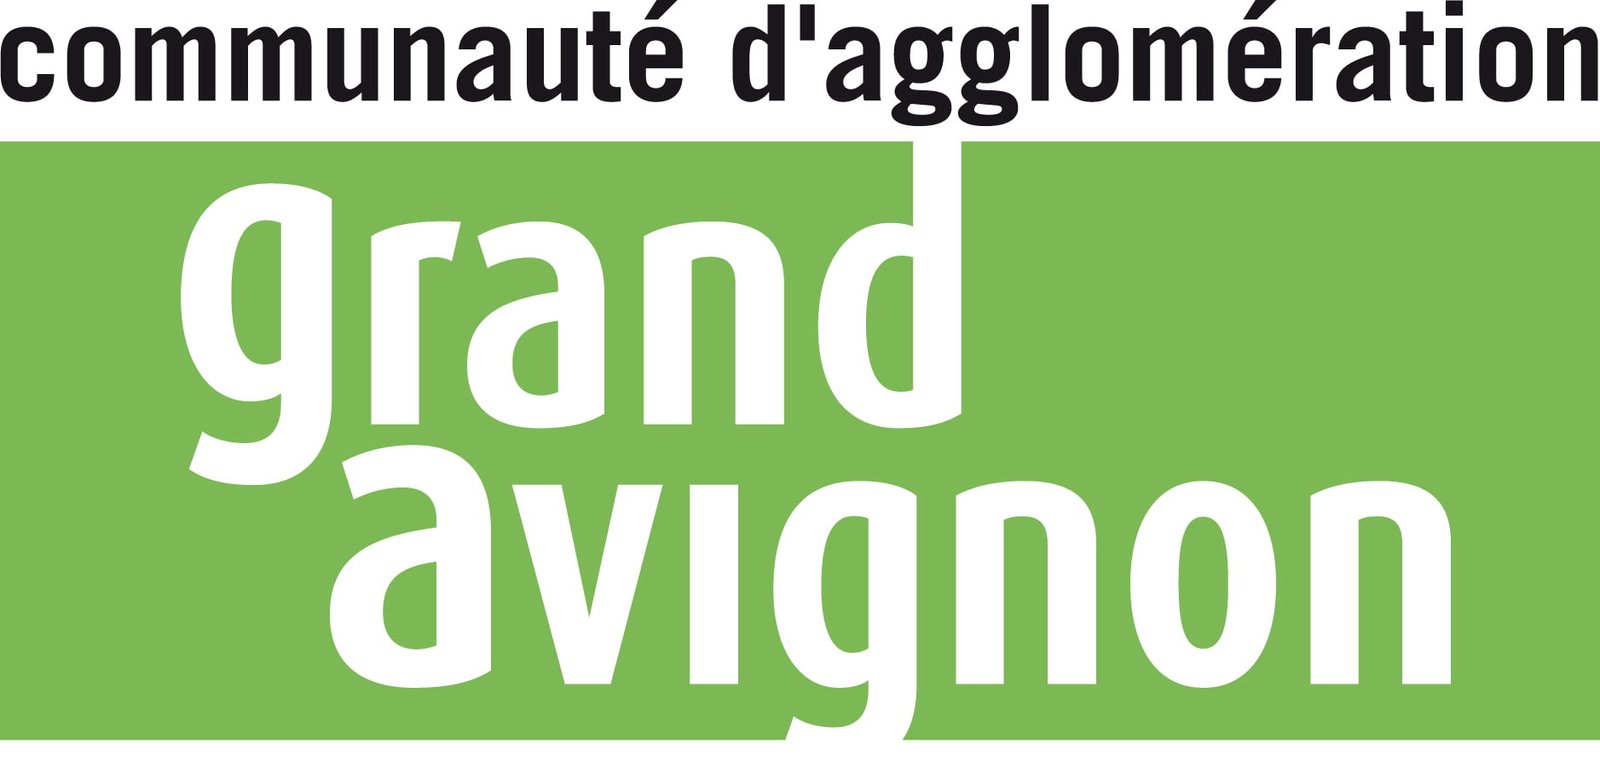 Logo en couleur de la communauté d'agglomération du Grand Avignon;